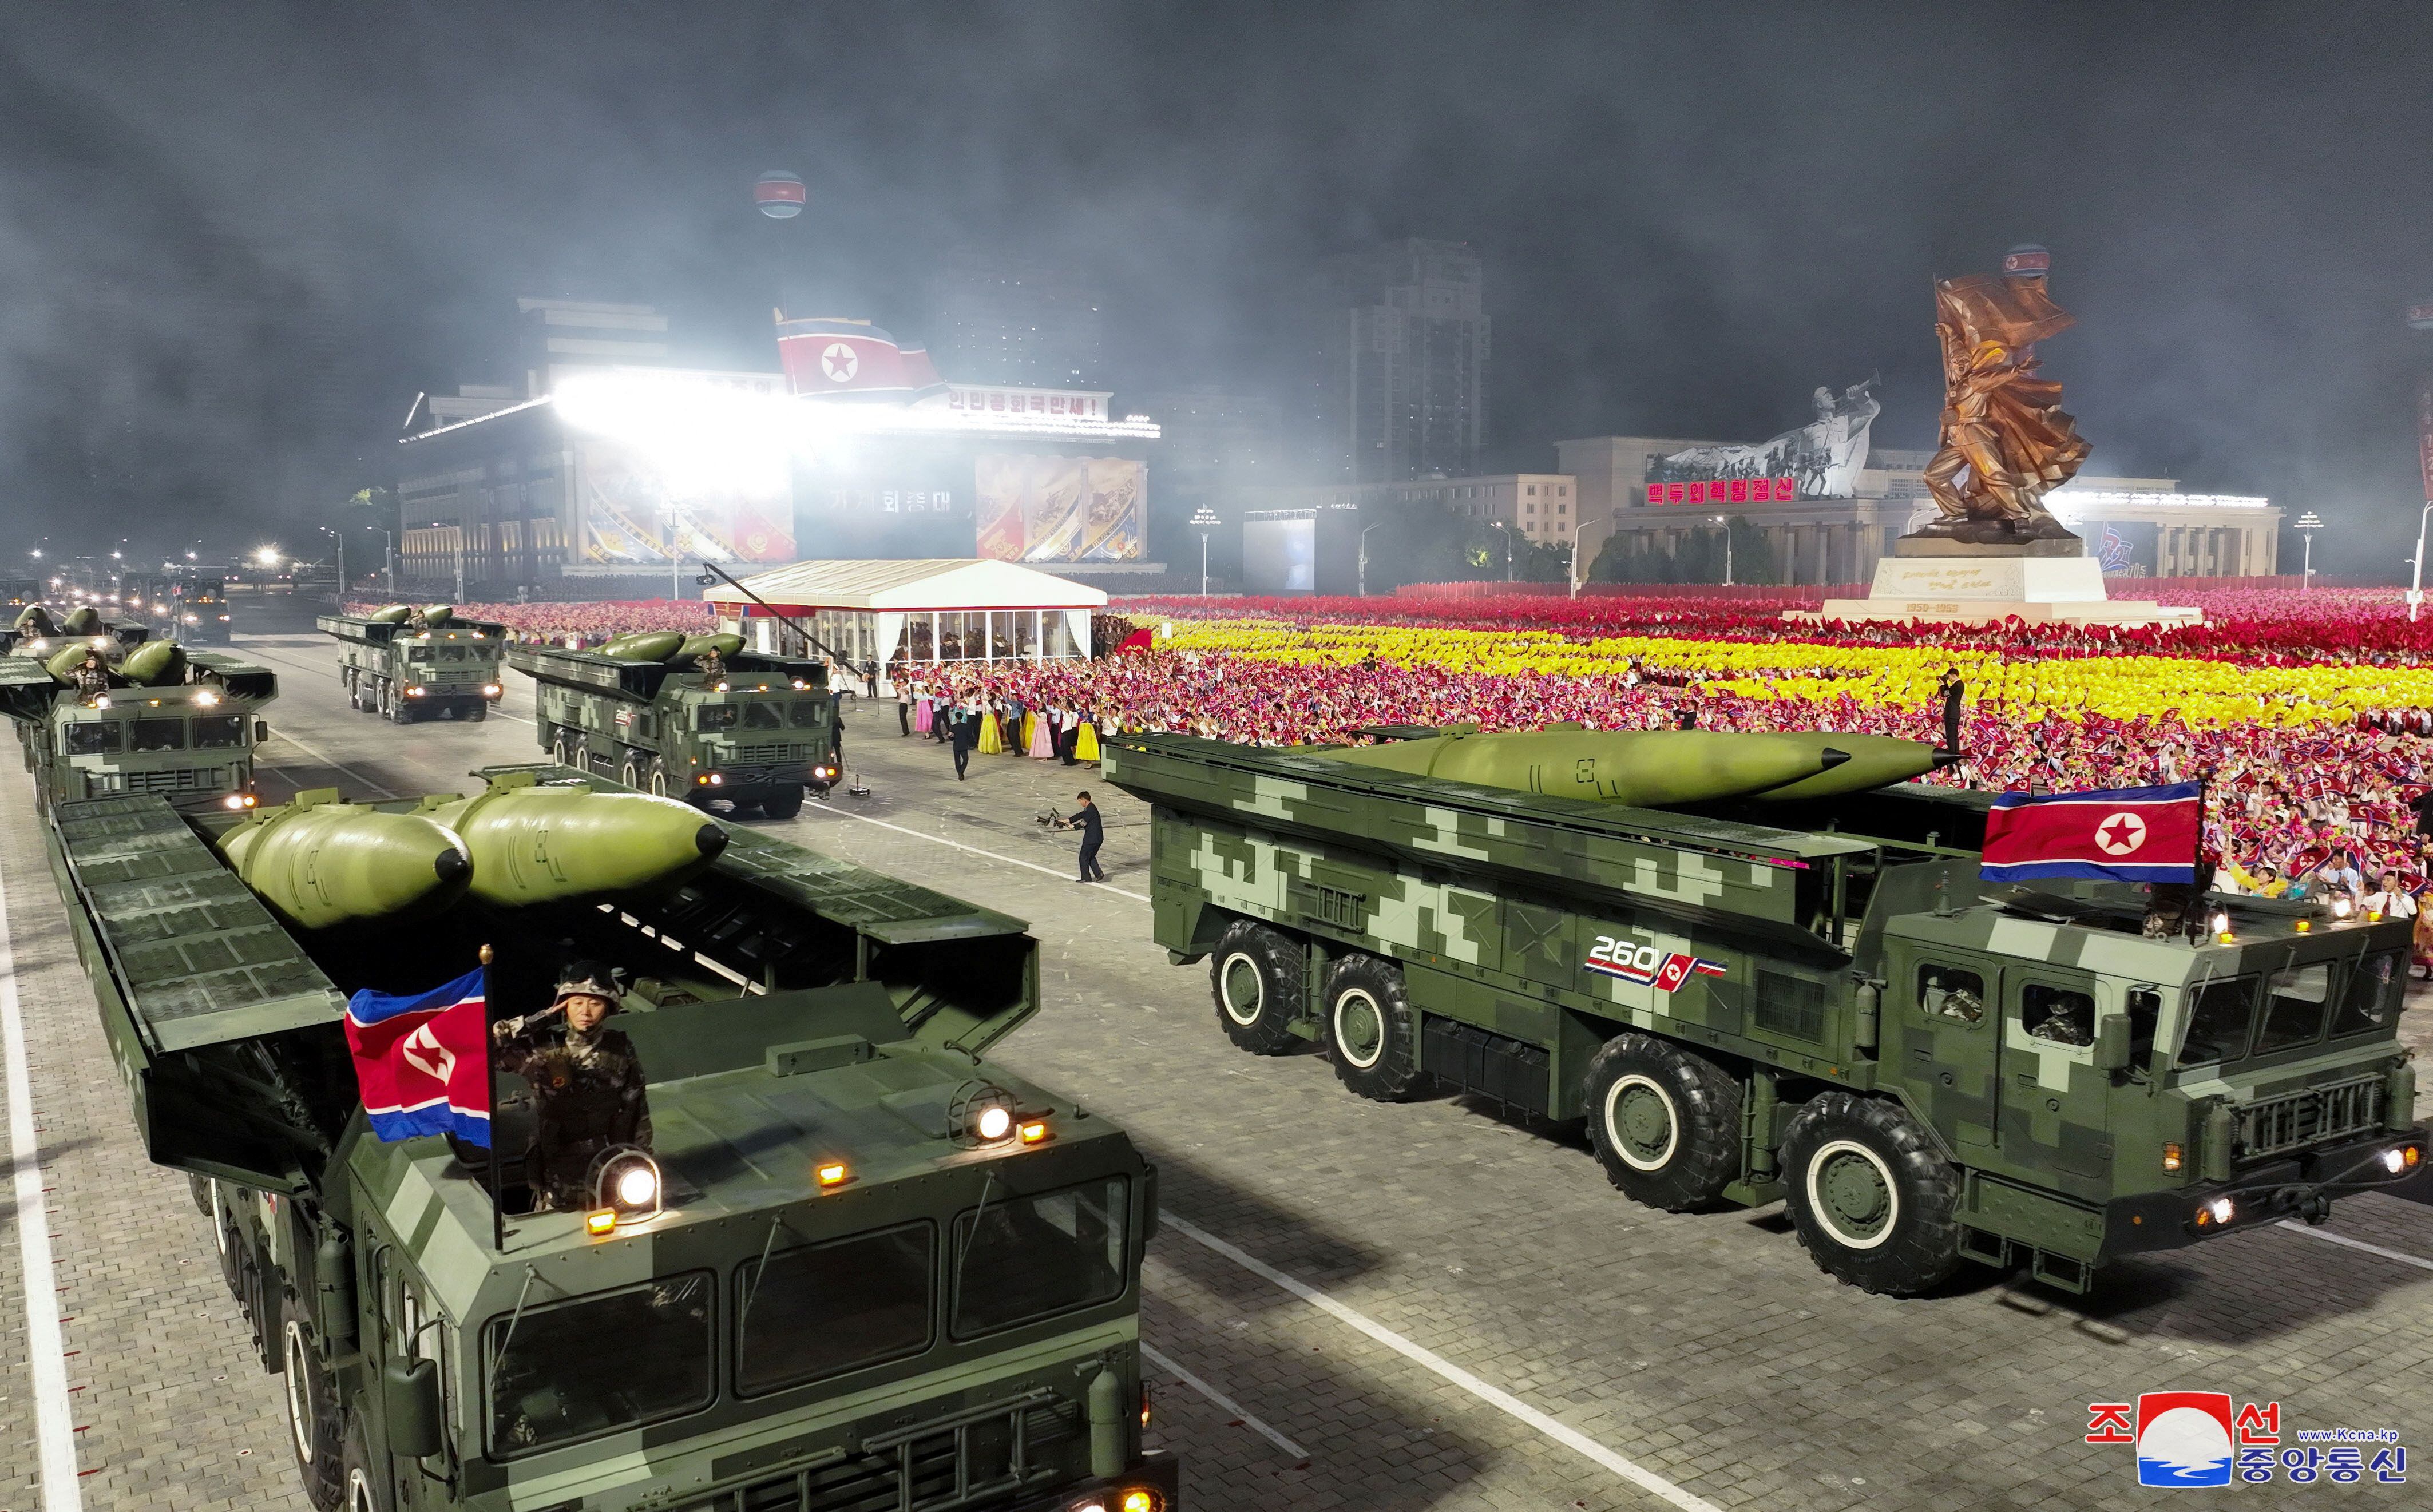 El desfile recordó el 70 aniversario del fin de los combates contra Corea del Sur (KCNA via REUTERS)